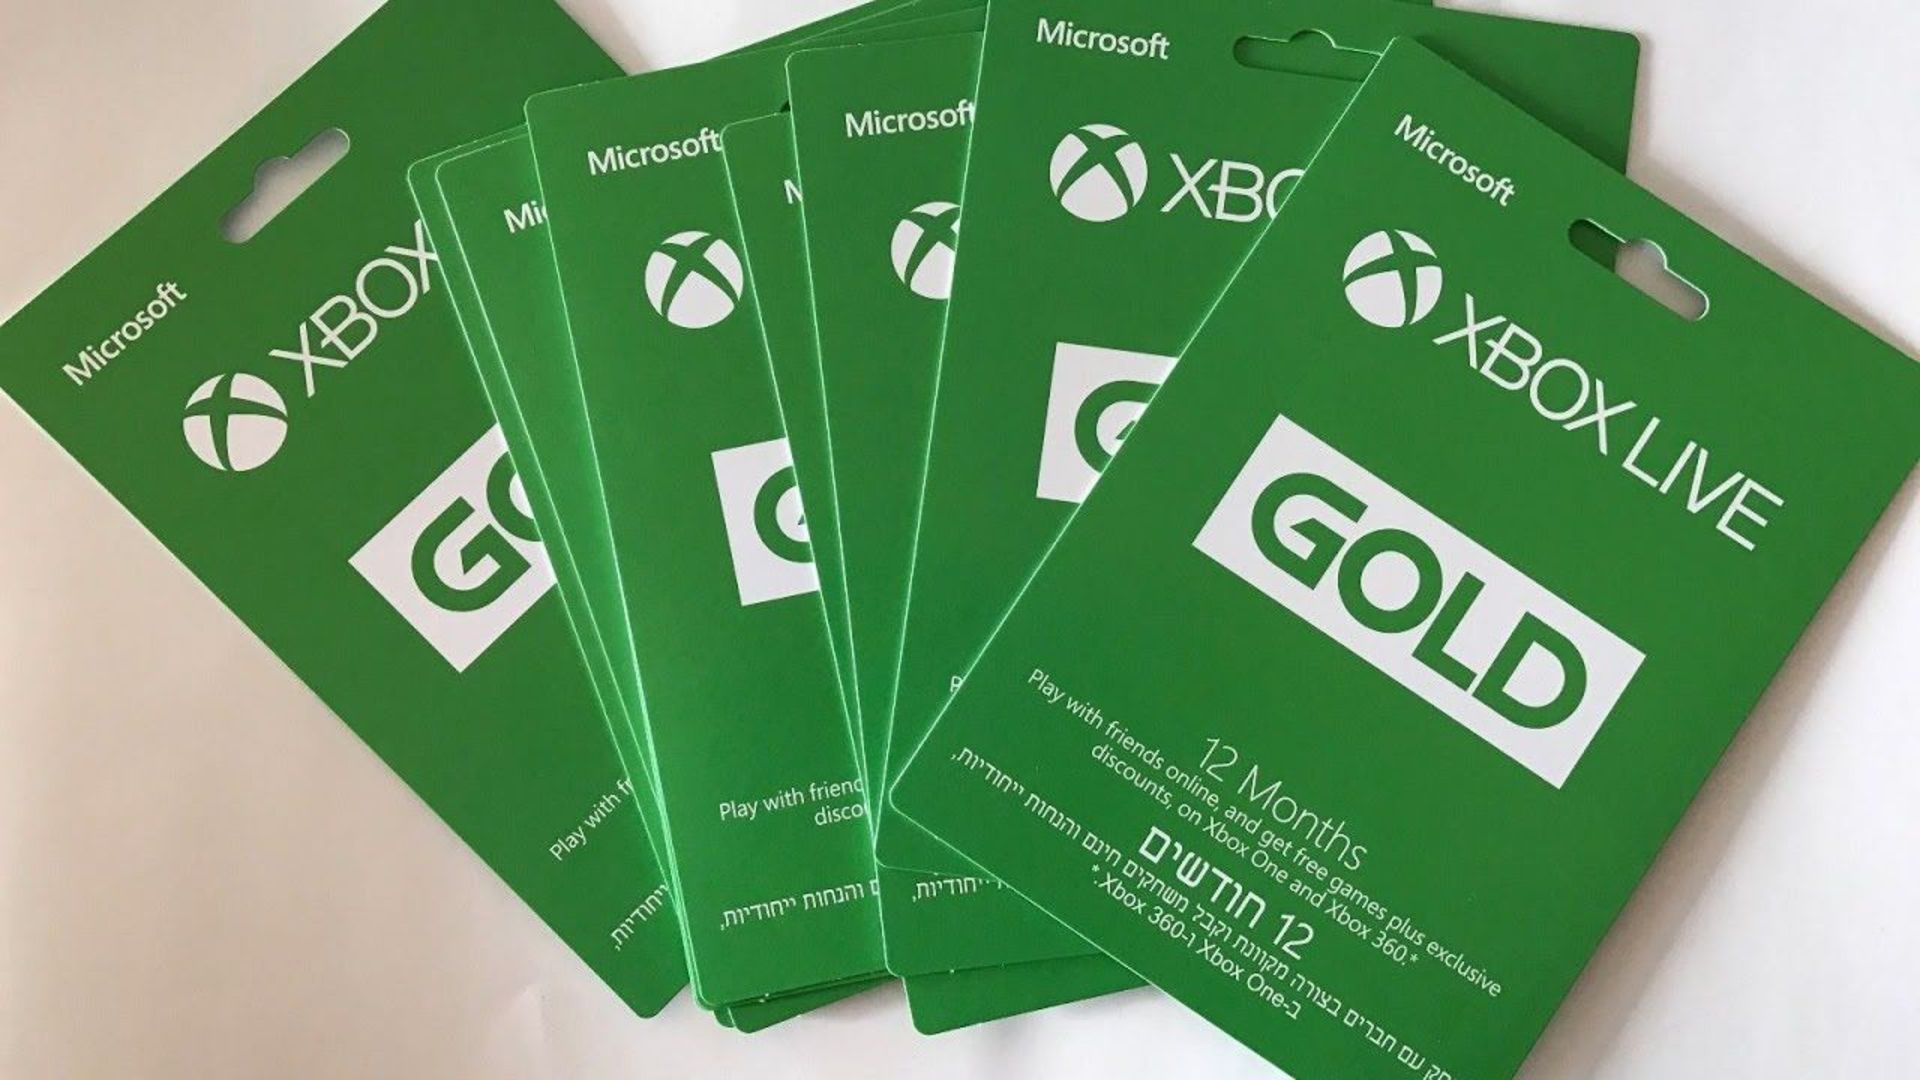 Купить подписку на xbox one. Xbox Live Gold. Подписка Xbox Live Gold. Подписка на Xbox one. Хбокс лайв.